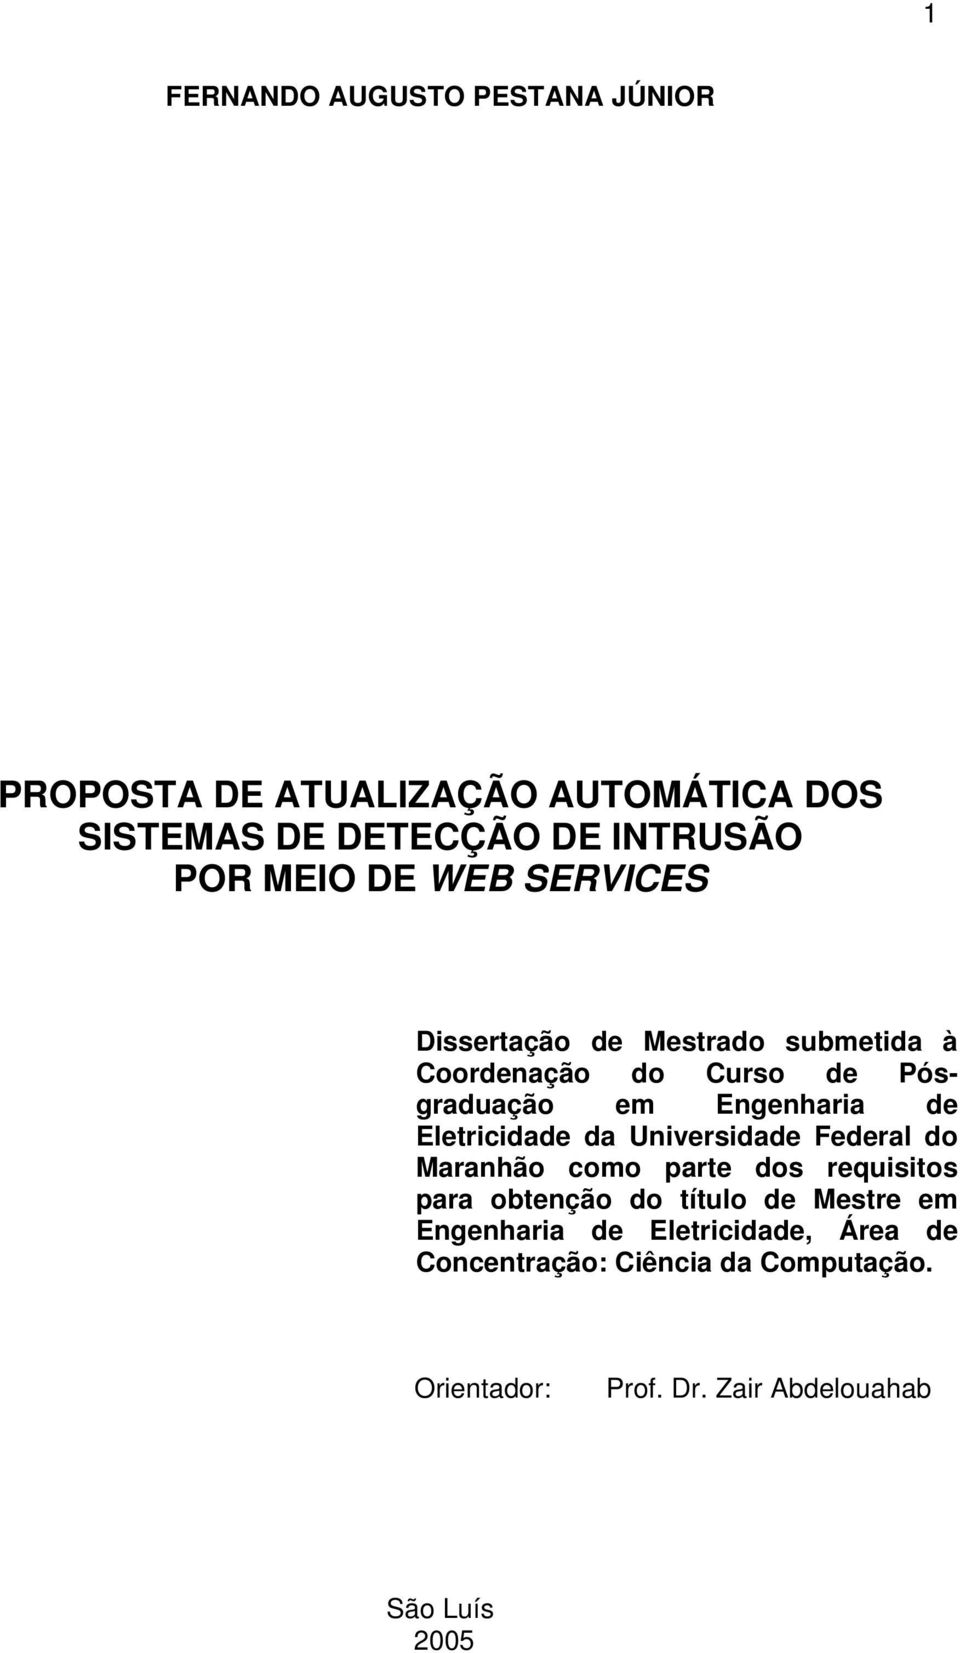 Eletricidade da Universidade Federal do Maranhão como parte dos requisitos para obtenção do título de Mestre em